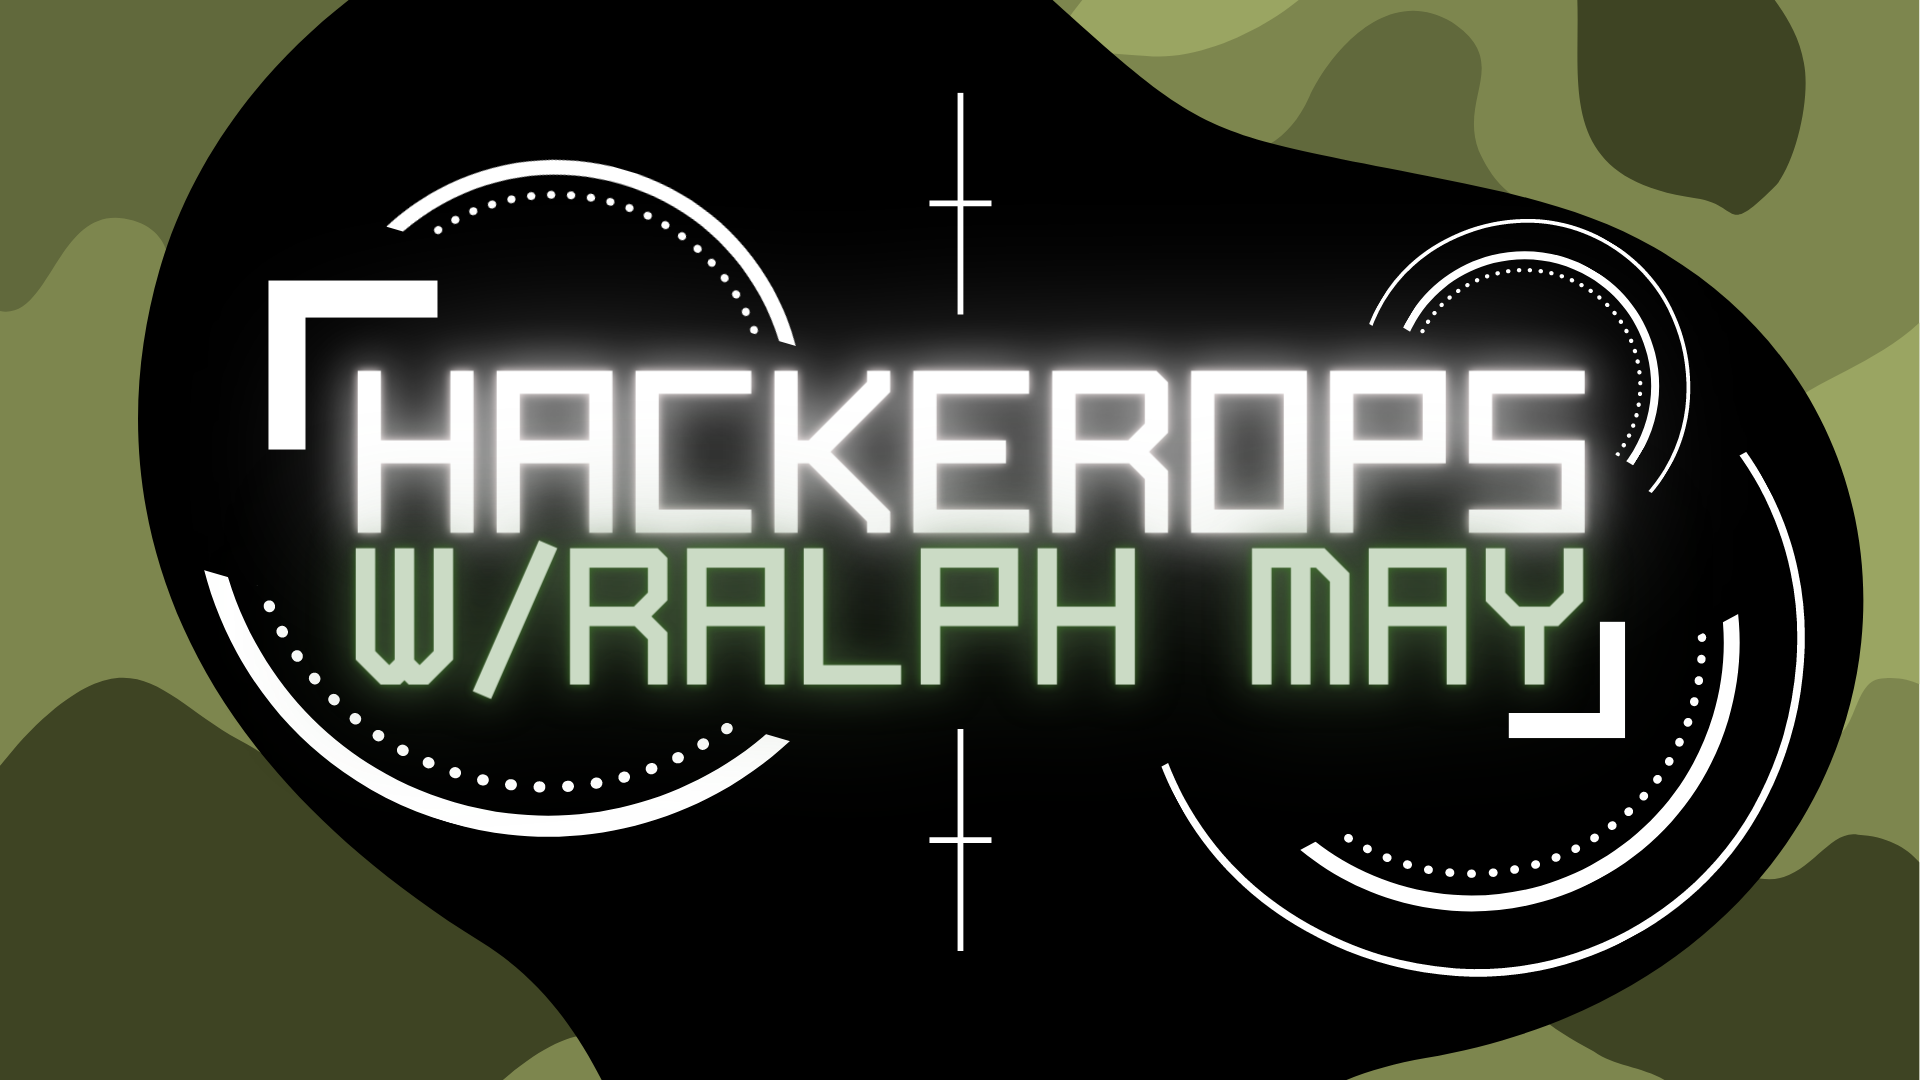 HackerOps w/ Ralph May